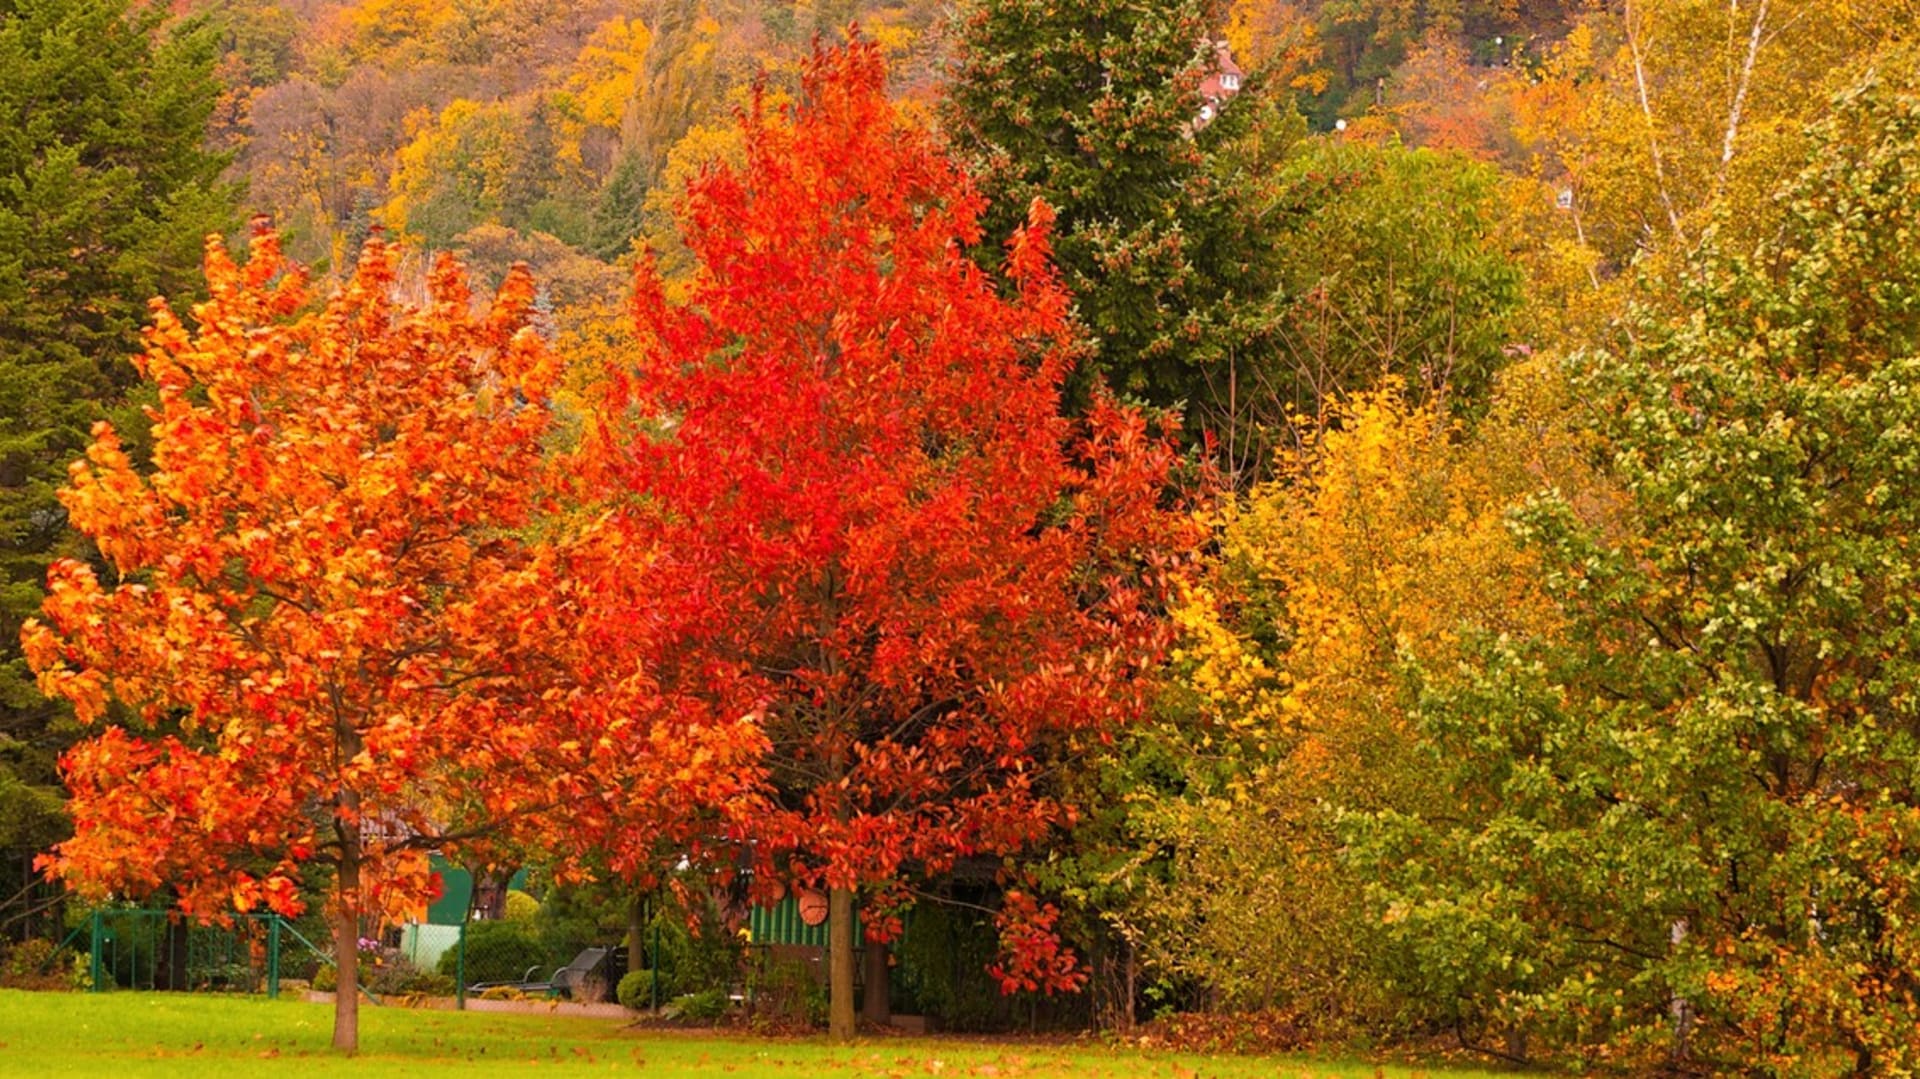 Proč listy stromů na podzim změní barvu ze zelené na žlutou, oranžovou, červenou a hnědou